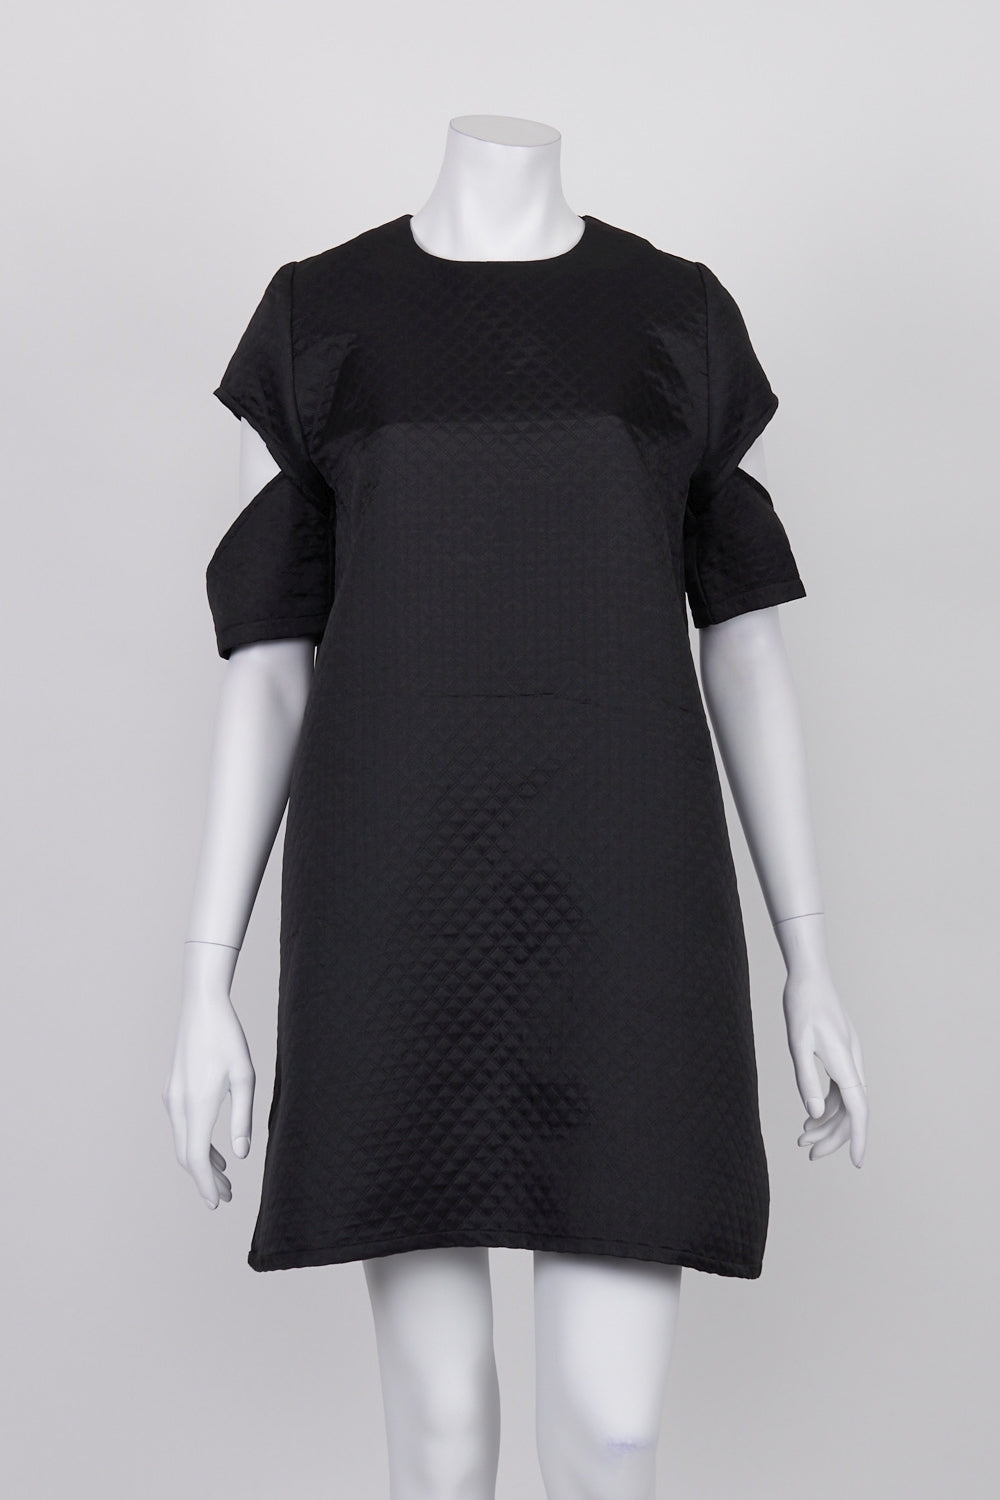 Kuwaii Black Textured Cold Shoulder Dress 10